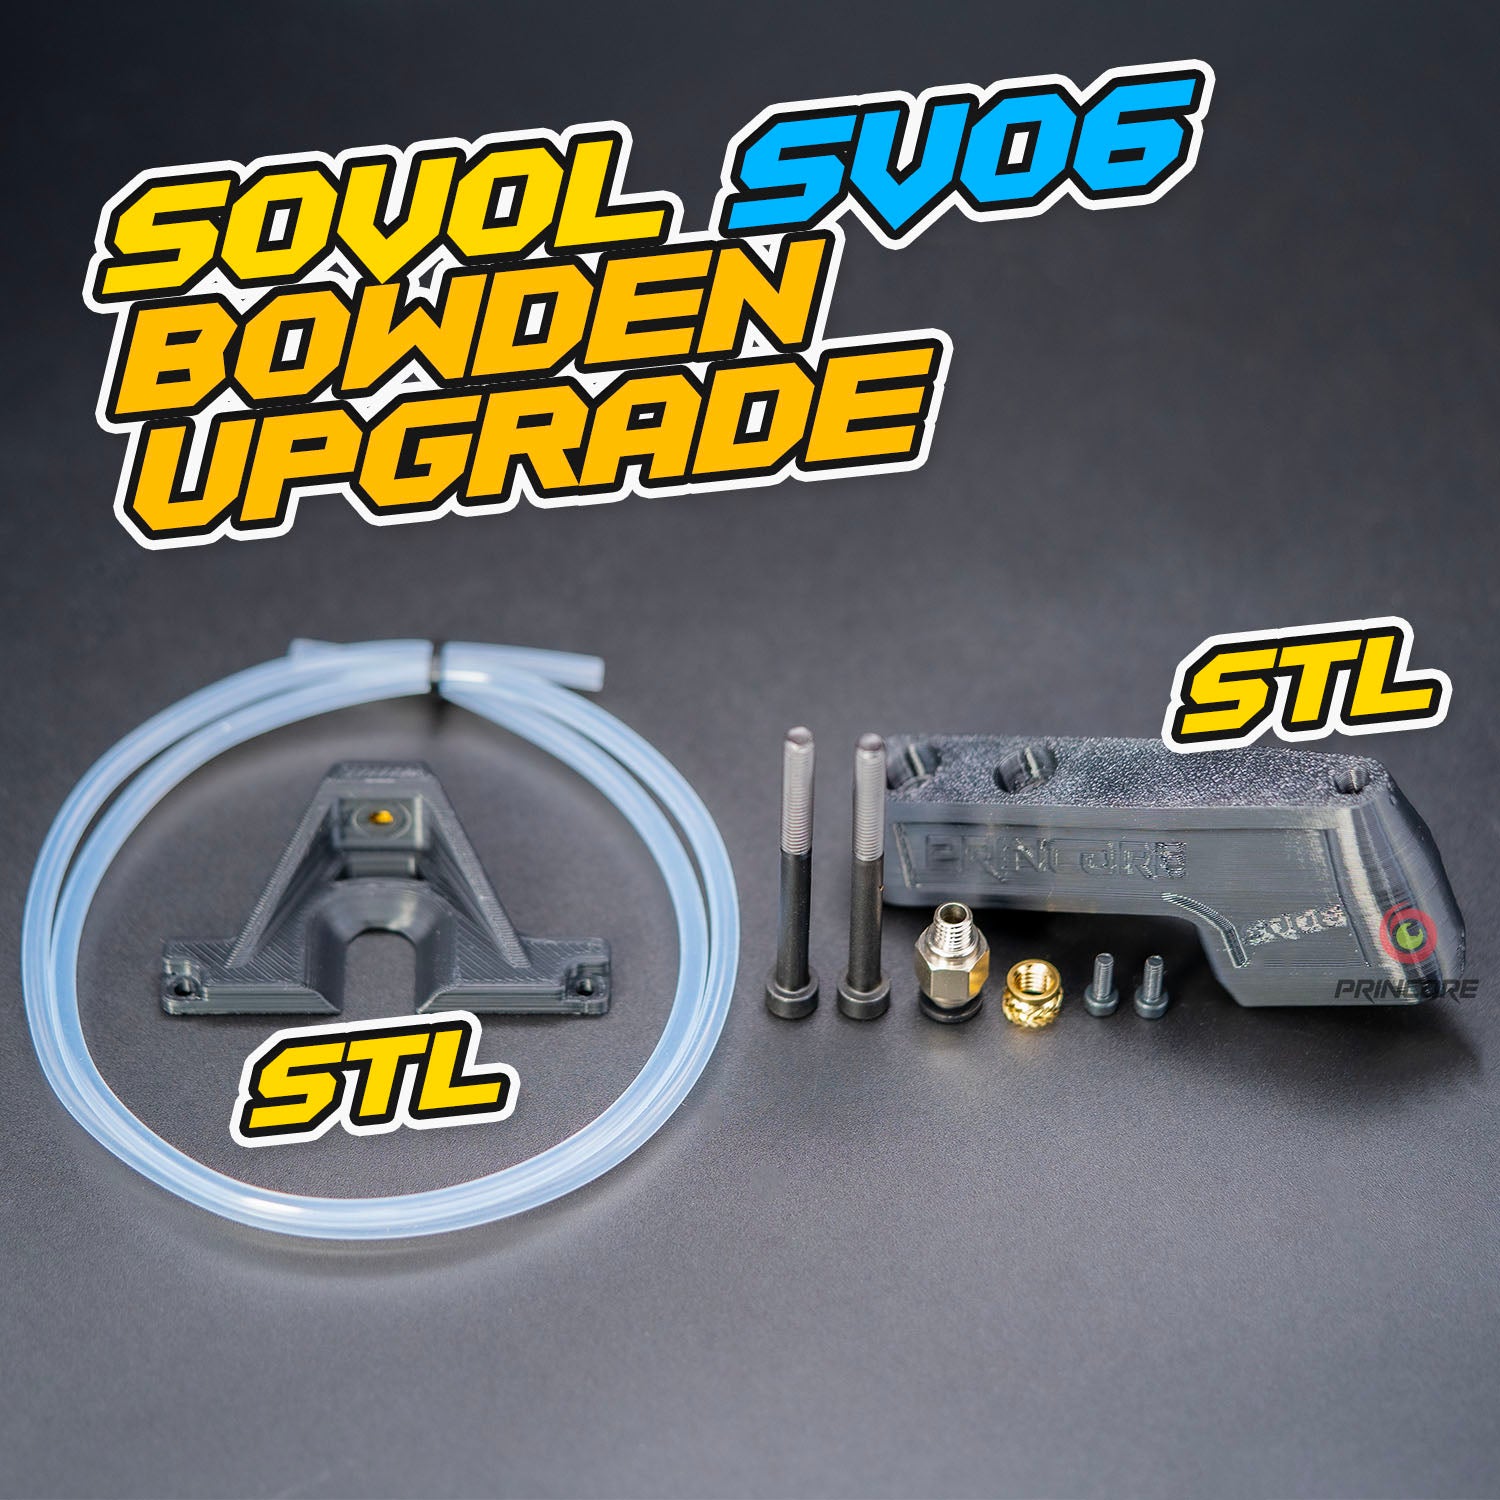 SOVOL SV06 Bowden Upgrade